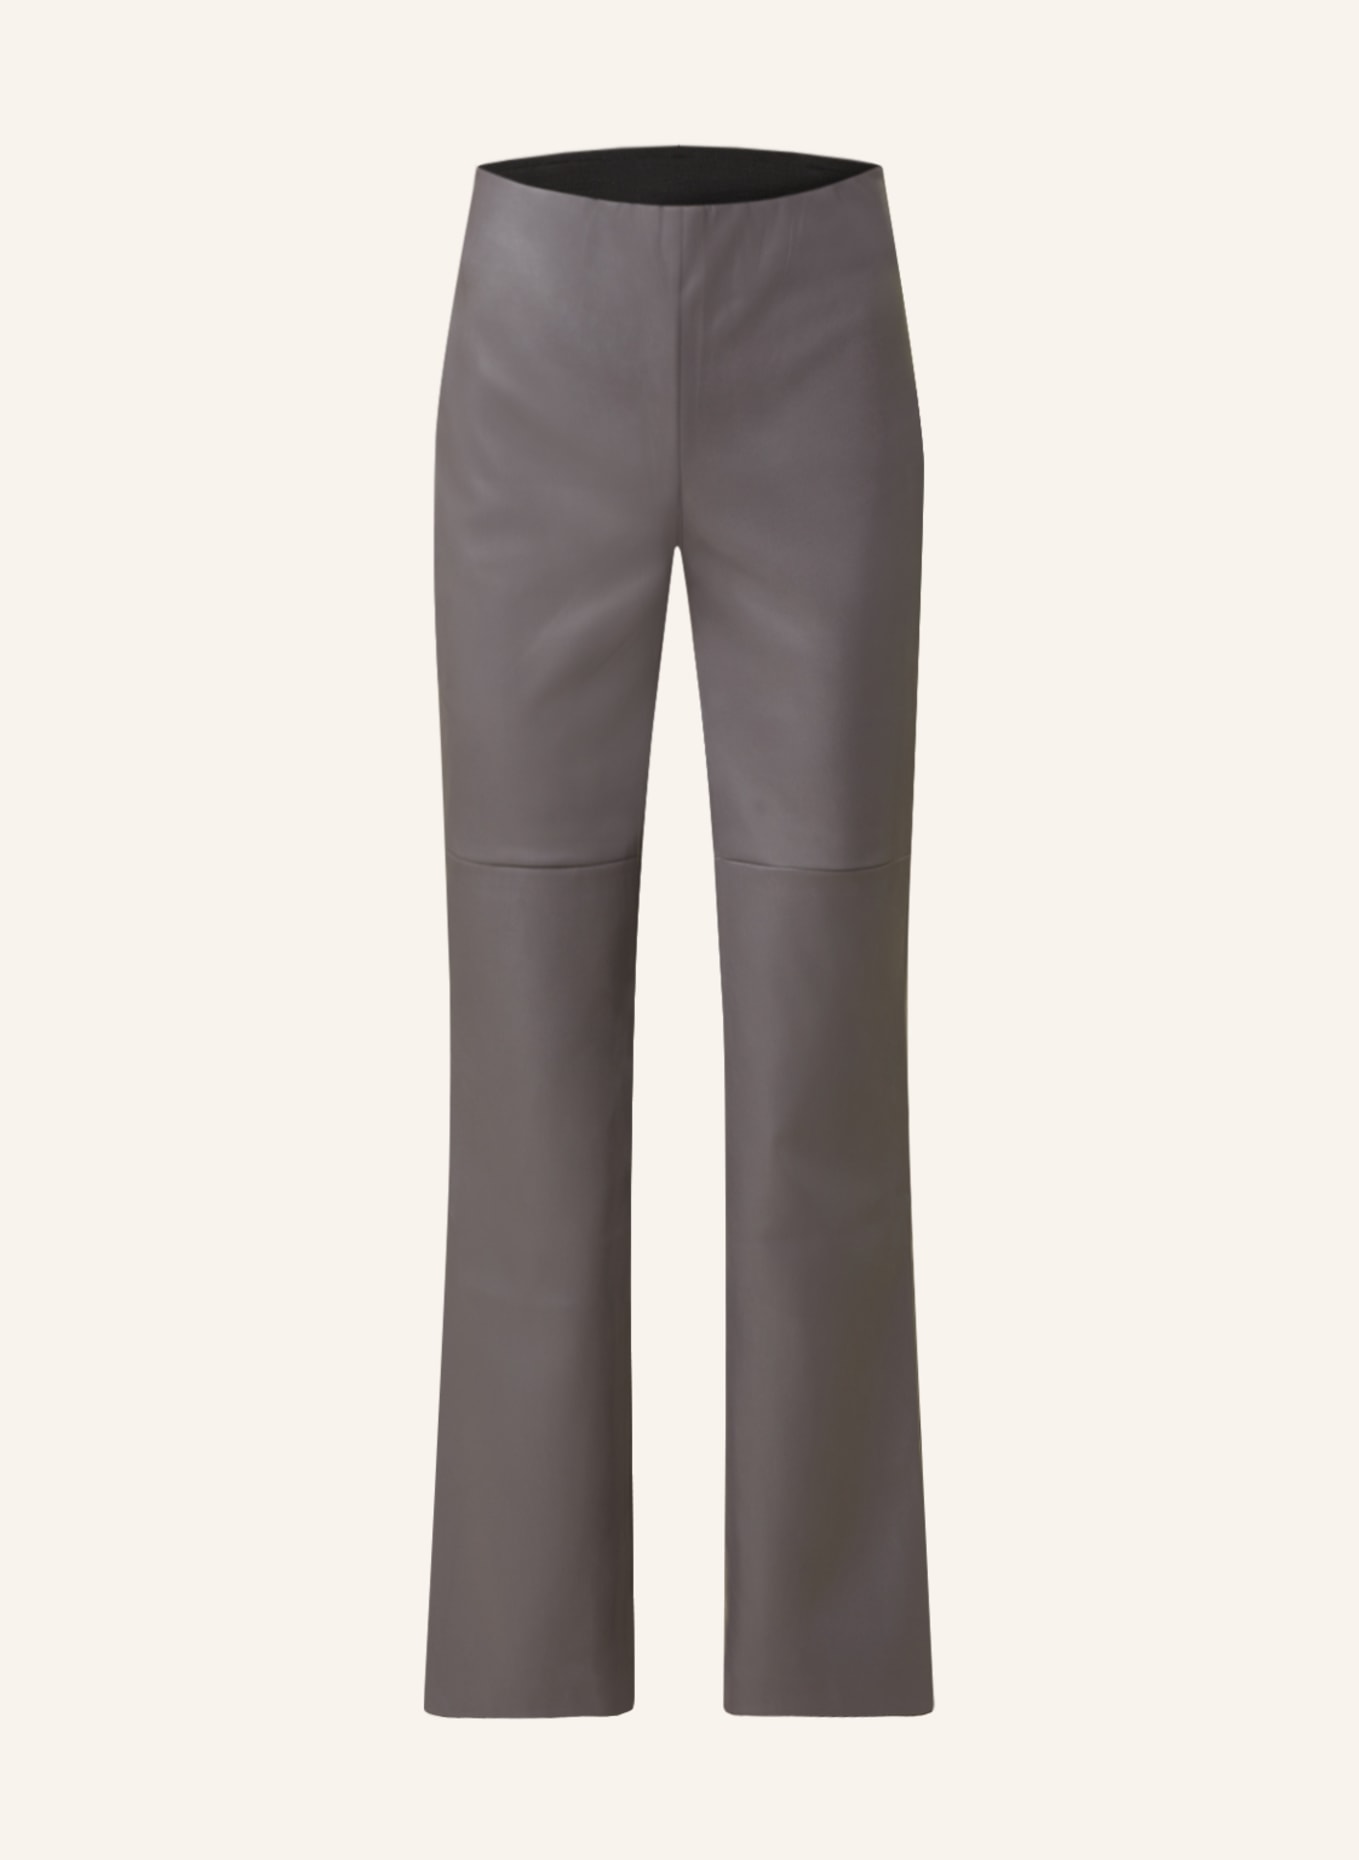 HERZEN'S ANGELEGENHEIT Pants in leather look, Color: GRAY (Image 1)